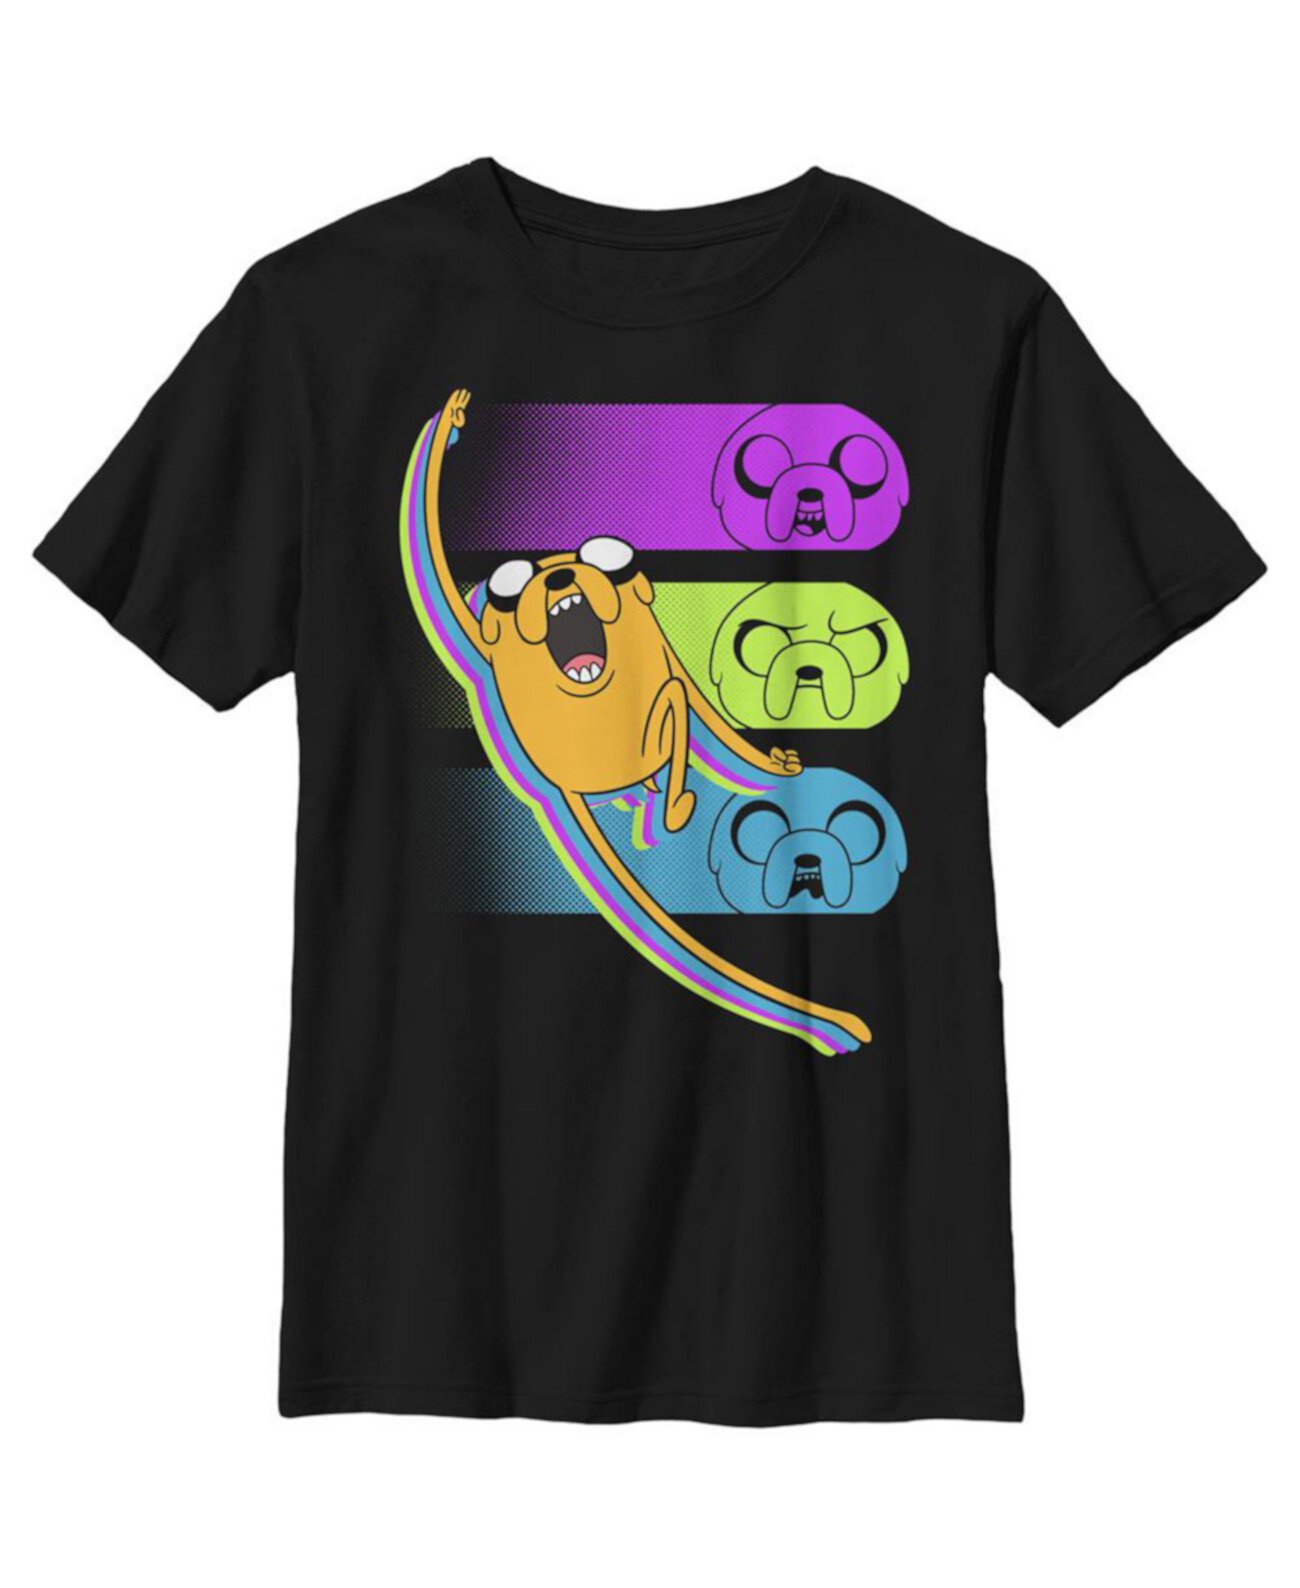 Детская футболка Jake Triple Threat «Время приключений» для мальчиков Cartoon Network